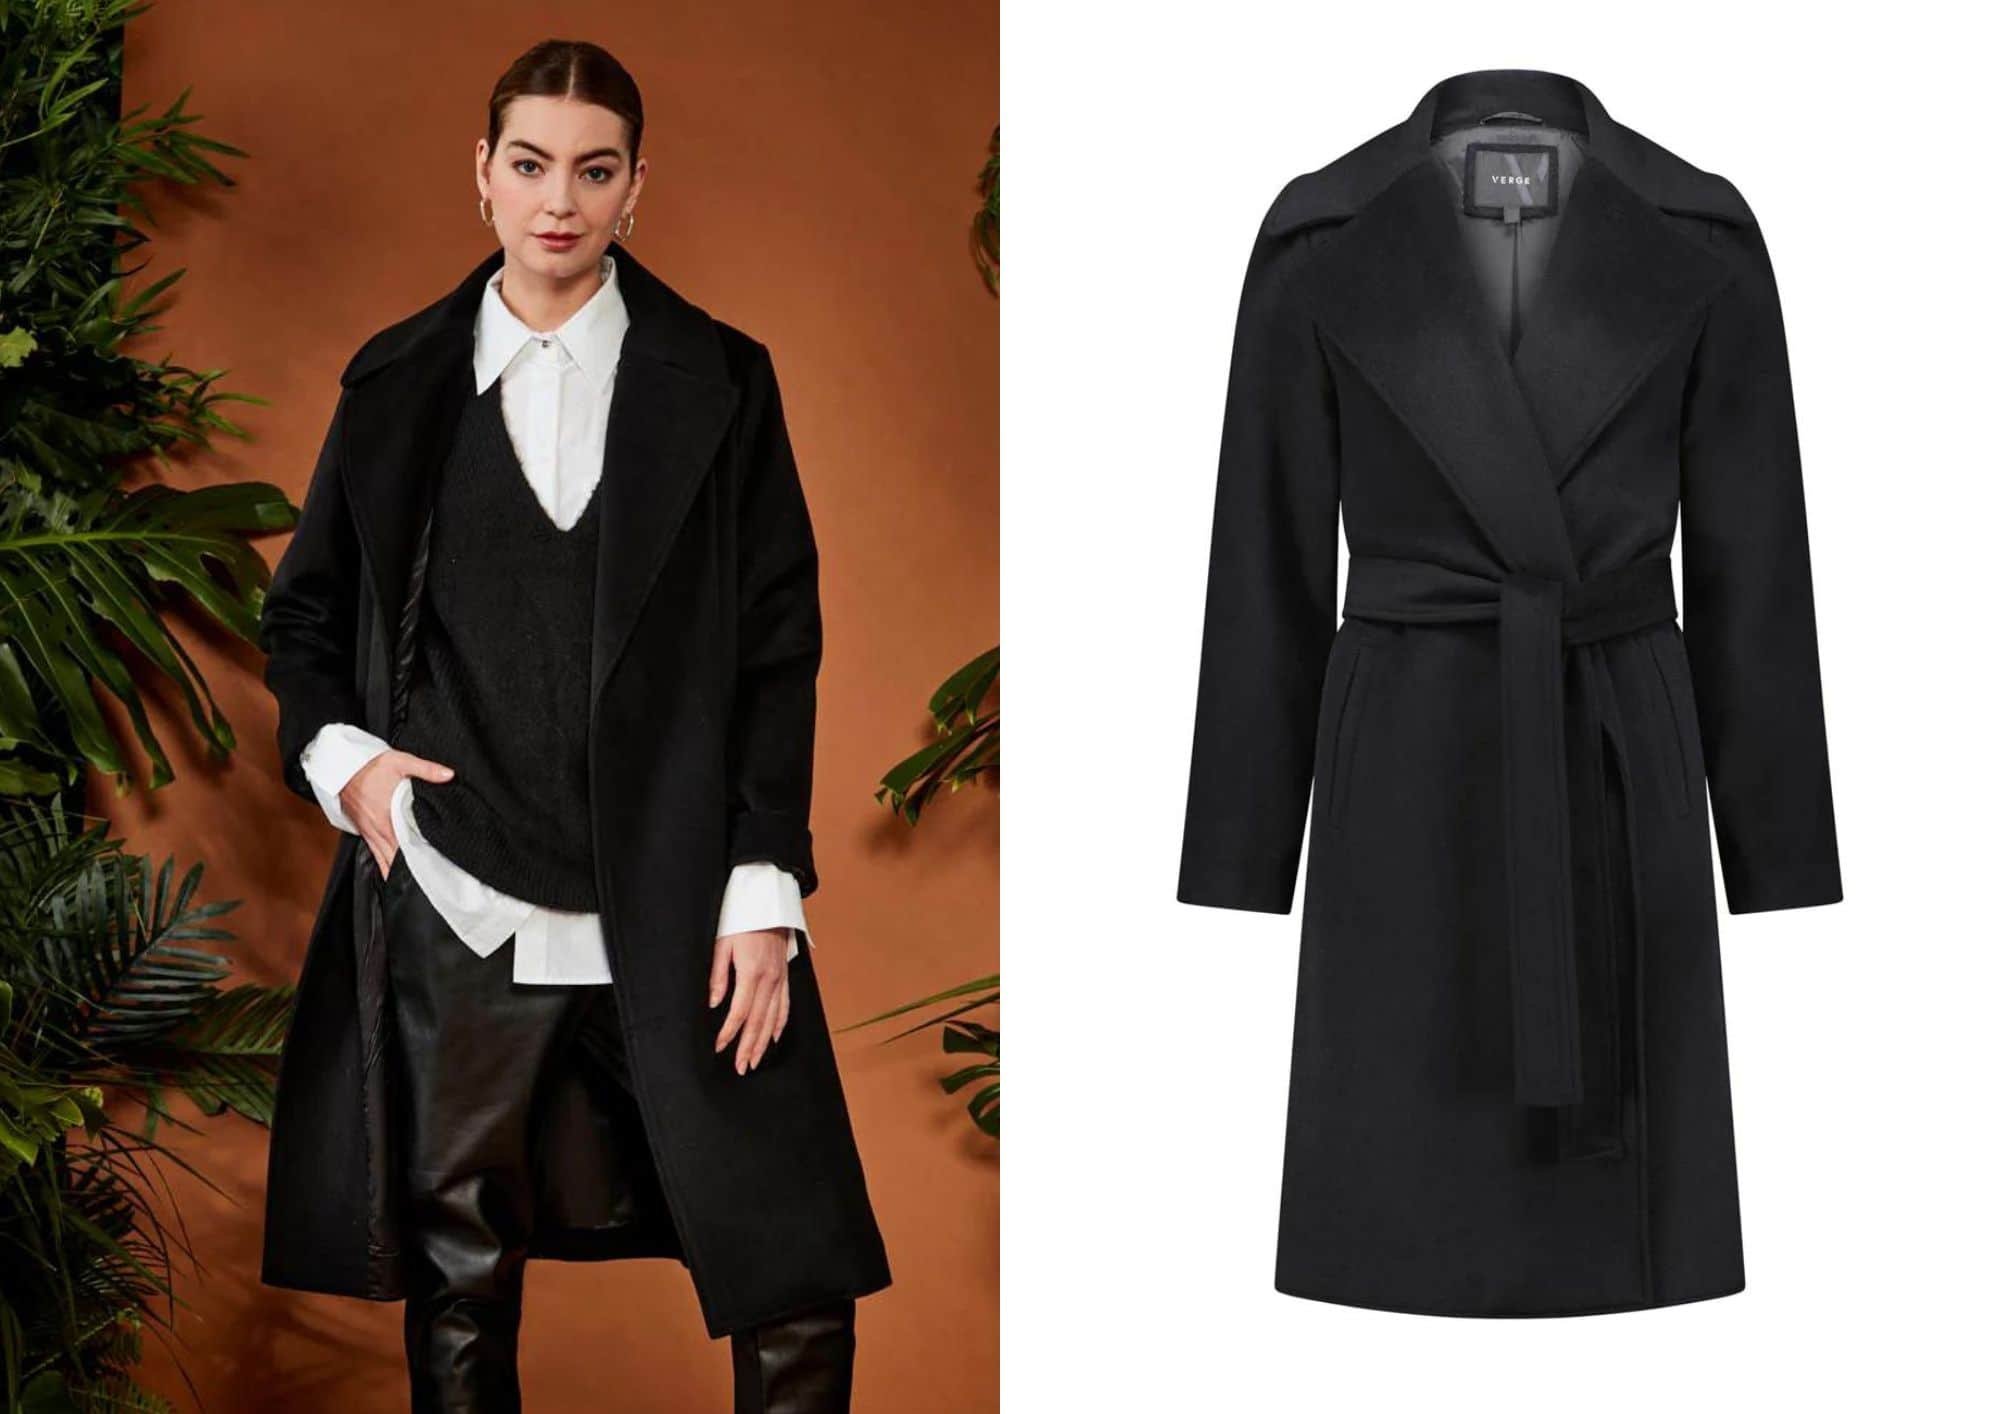 Verge Foxtail Women's Jackets/ Coats